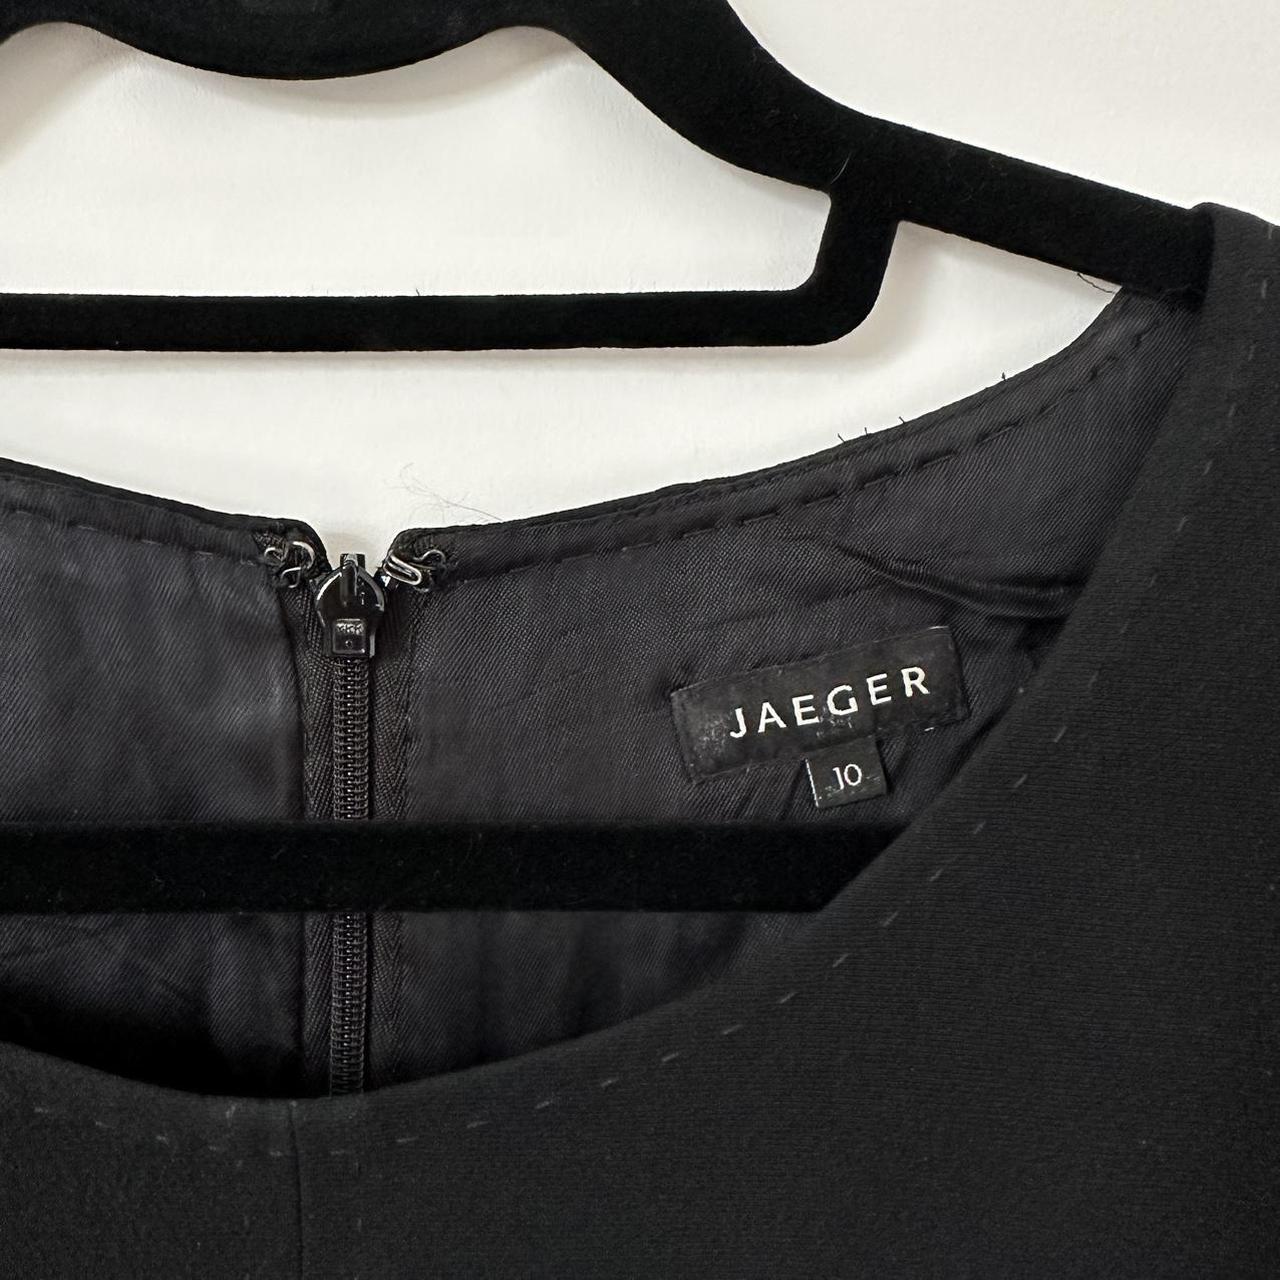 Formal Jaeger dress #formal #jaeger #dress - Depop